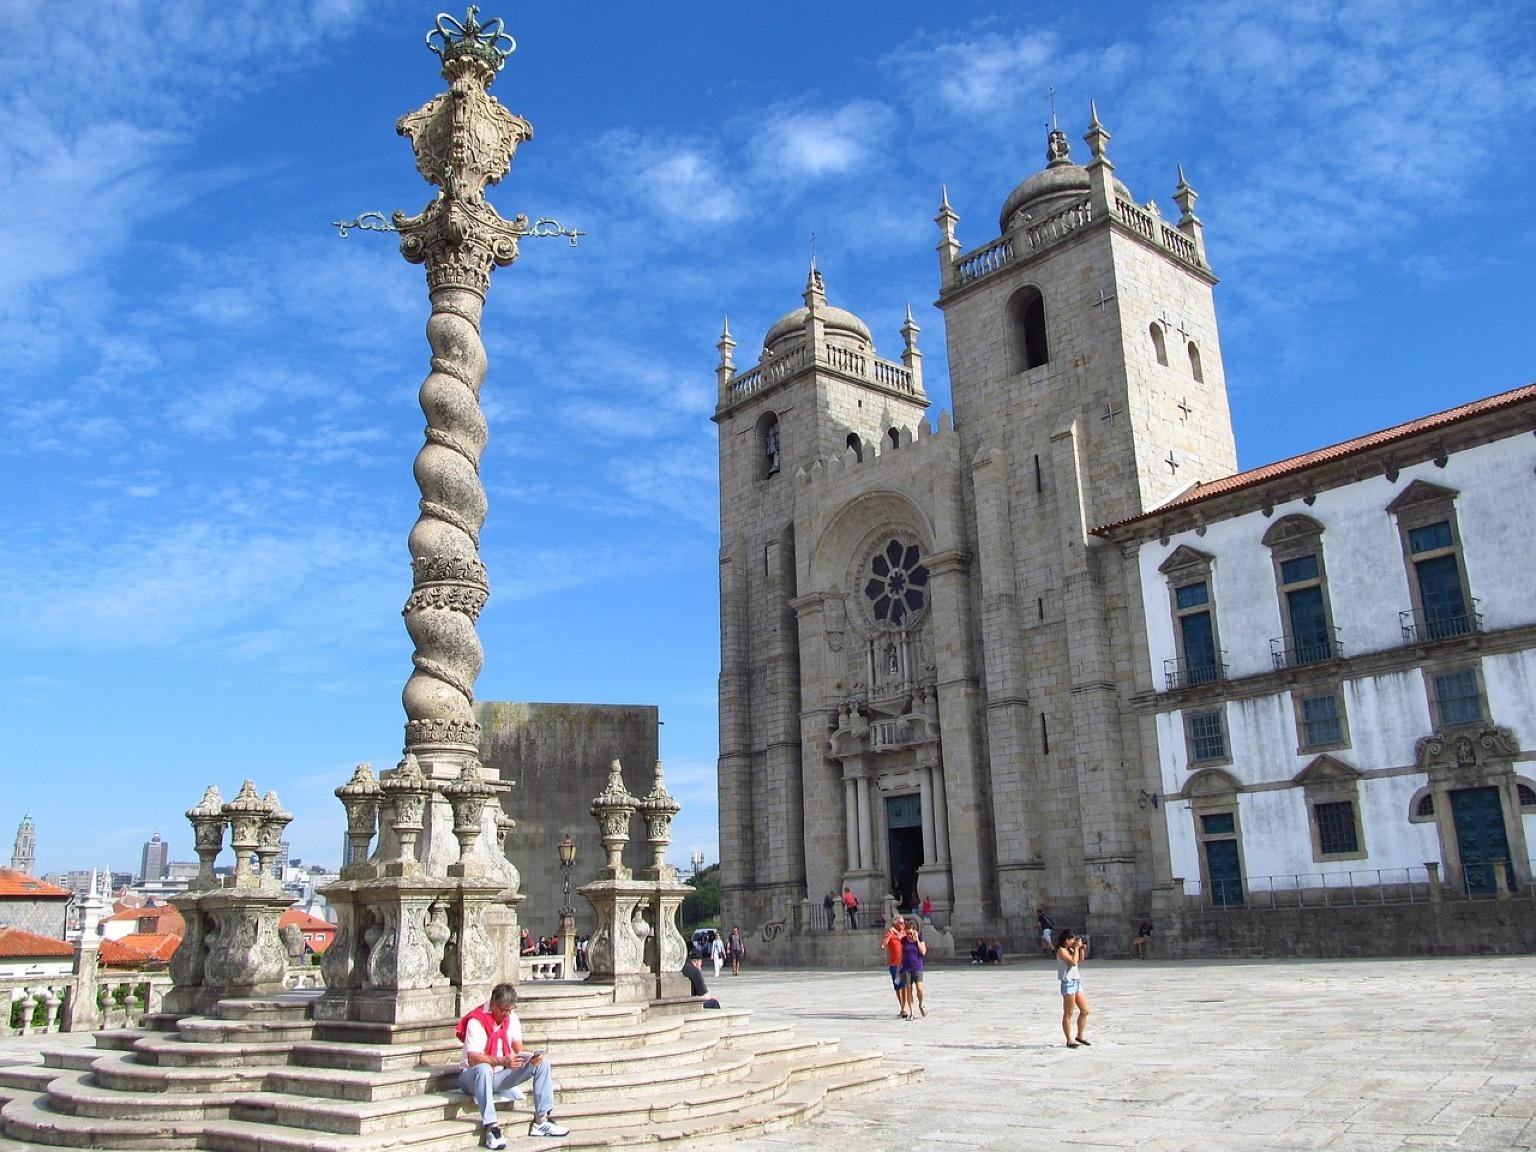 Testemunhar a coexistência harmoniosa de história e beleza na Sé do Porto e no Pelourinho